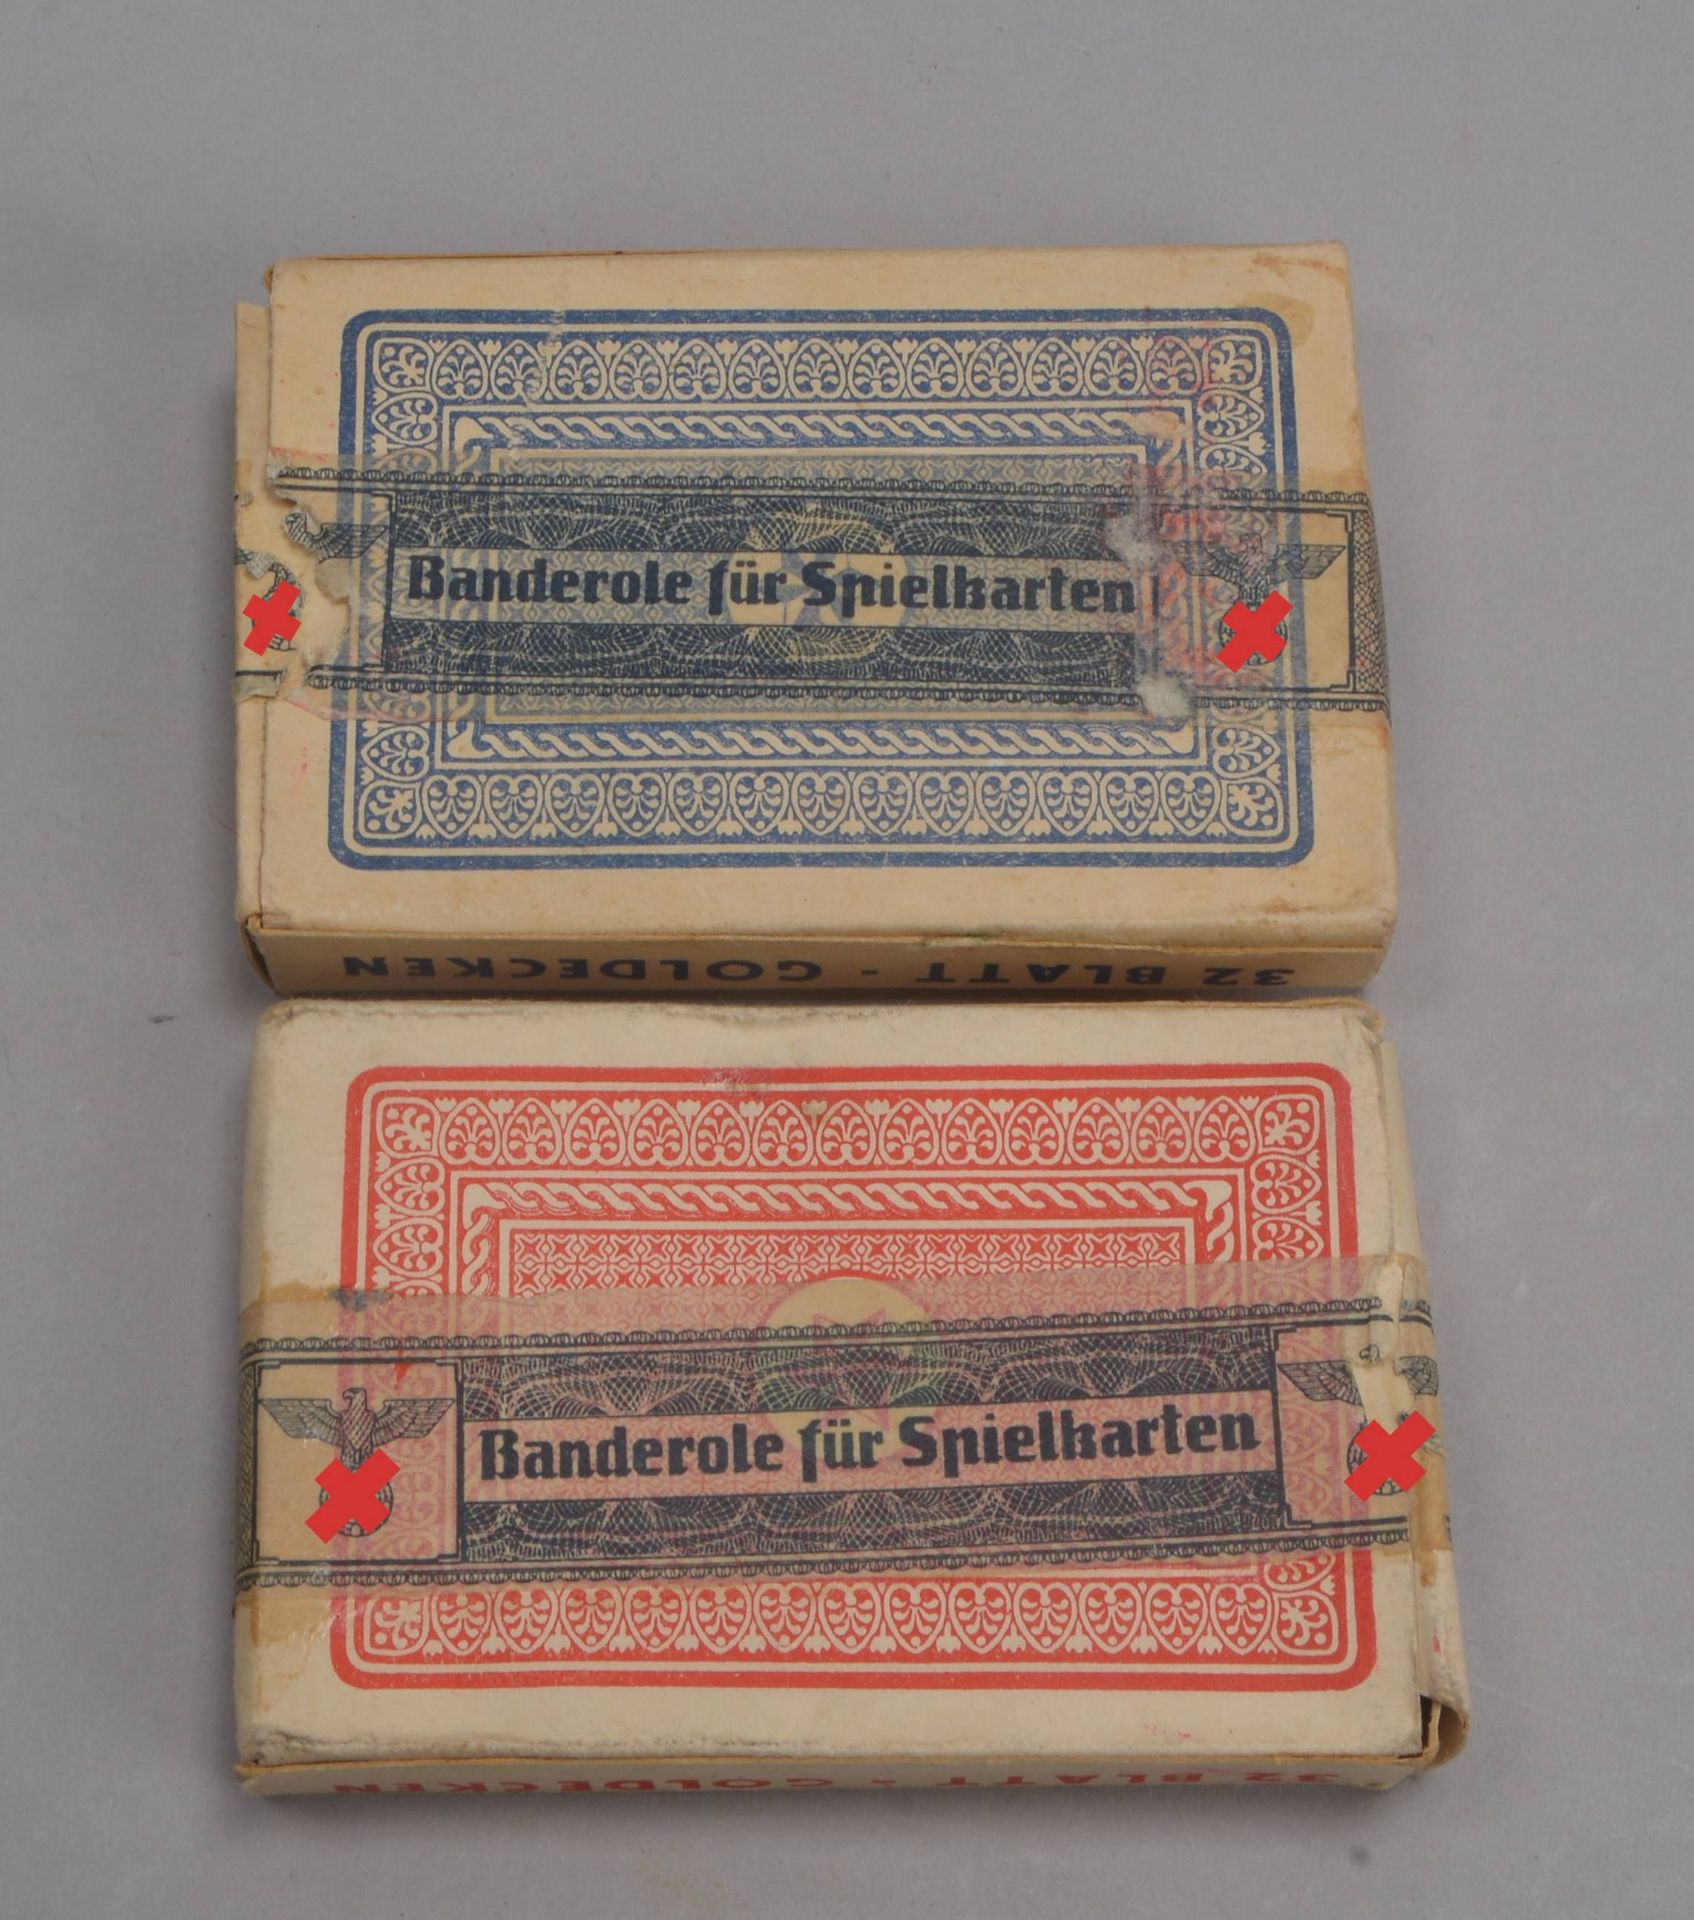 Kleines Militaria-Sammlerkonvolut, 'III. Reich': 2x Skat-Spielkartendecks, jeweils mit 'III. Reich'-